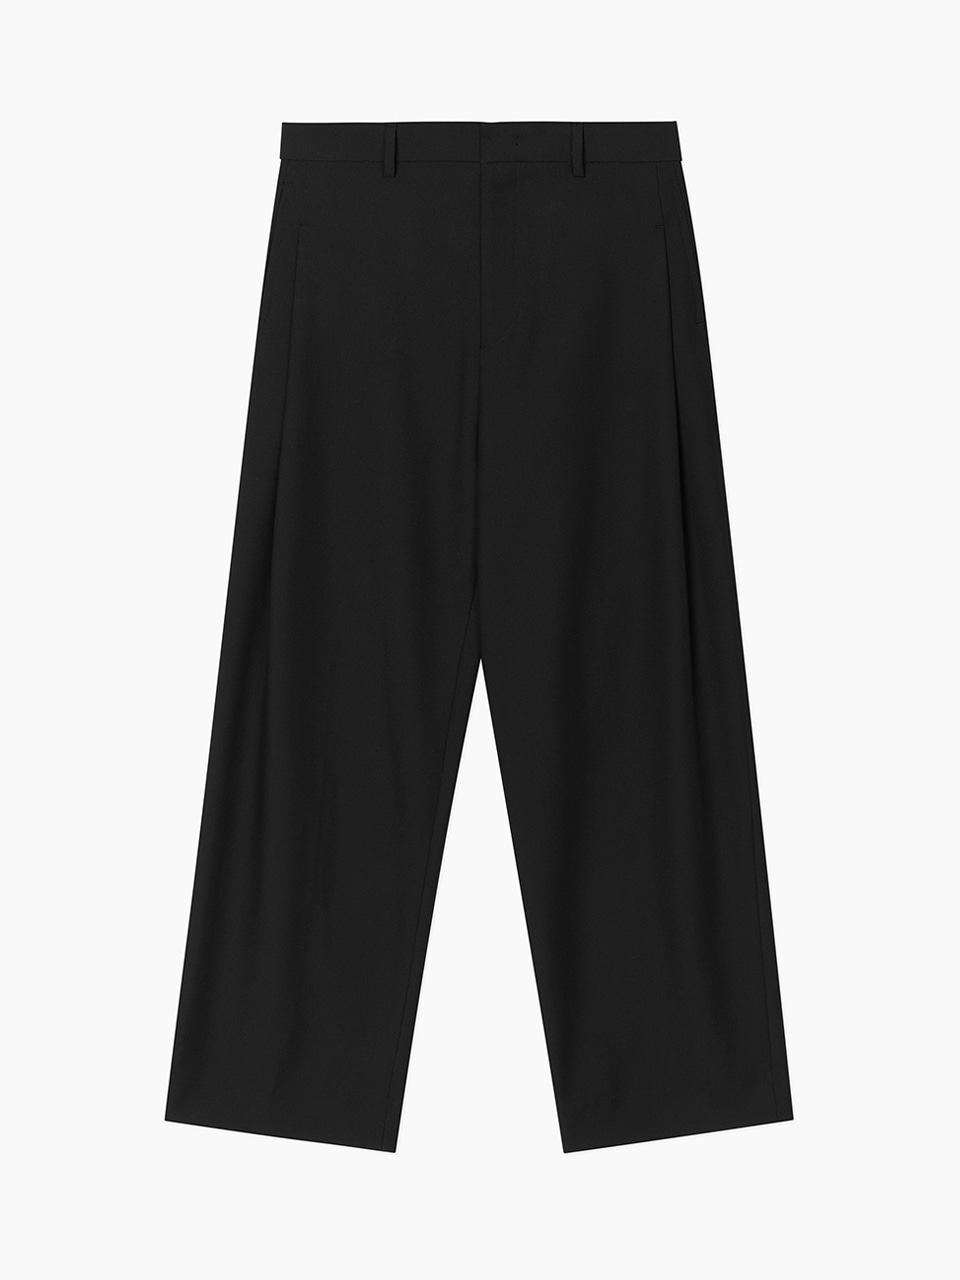 Twill Weave Side Tuck Pants (Black)